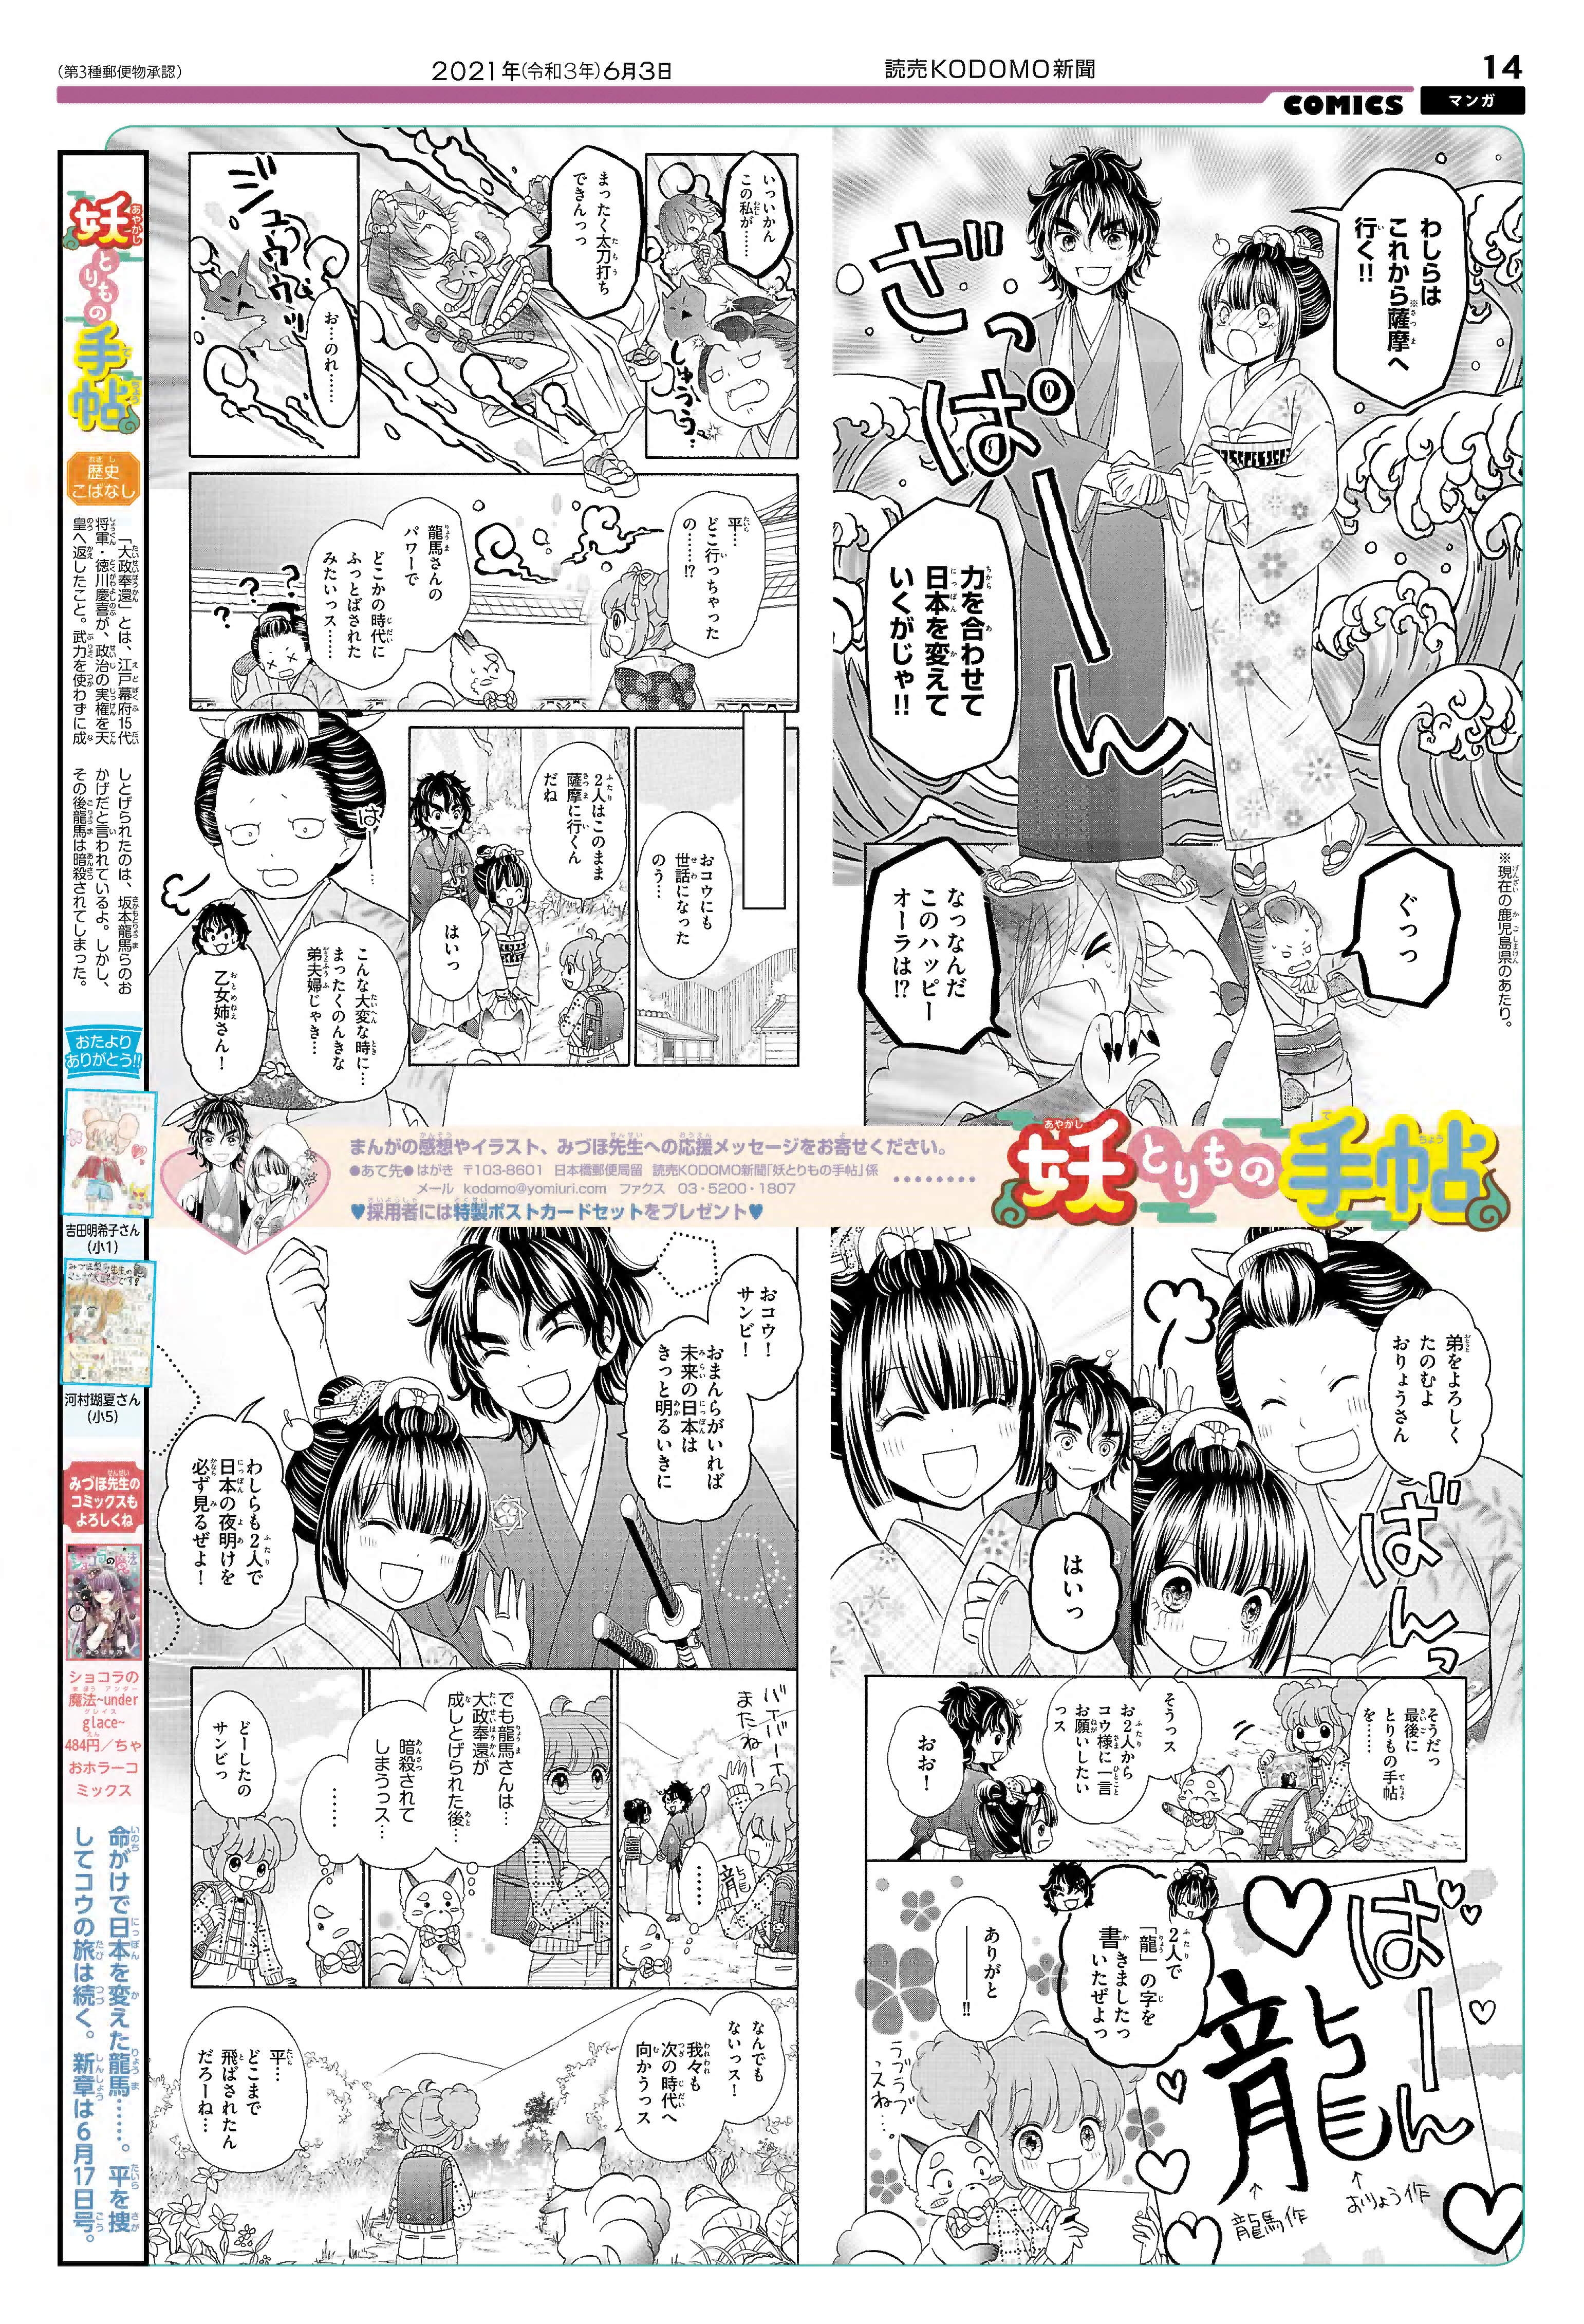 妖とりもの手帖学習まんが「愛は日本を変える!?の巻」全体表示2ページ目画像